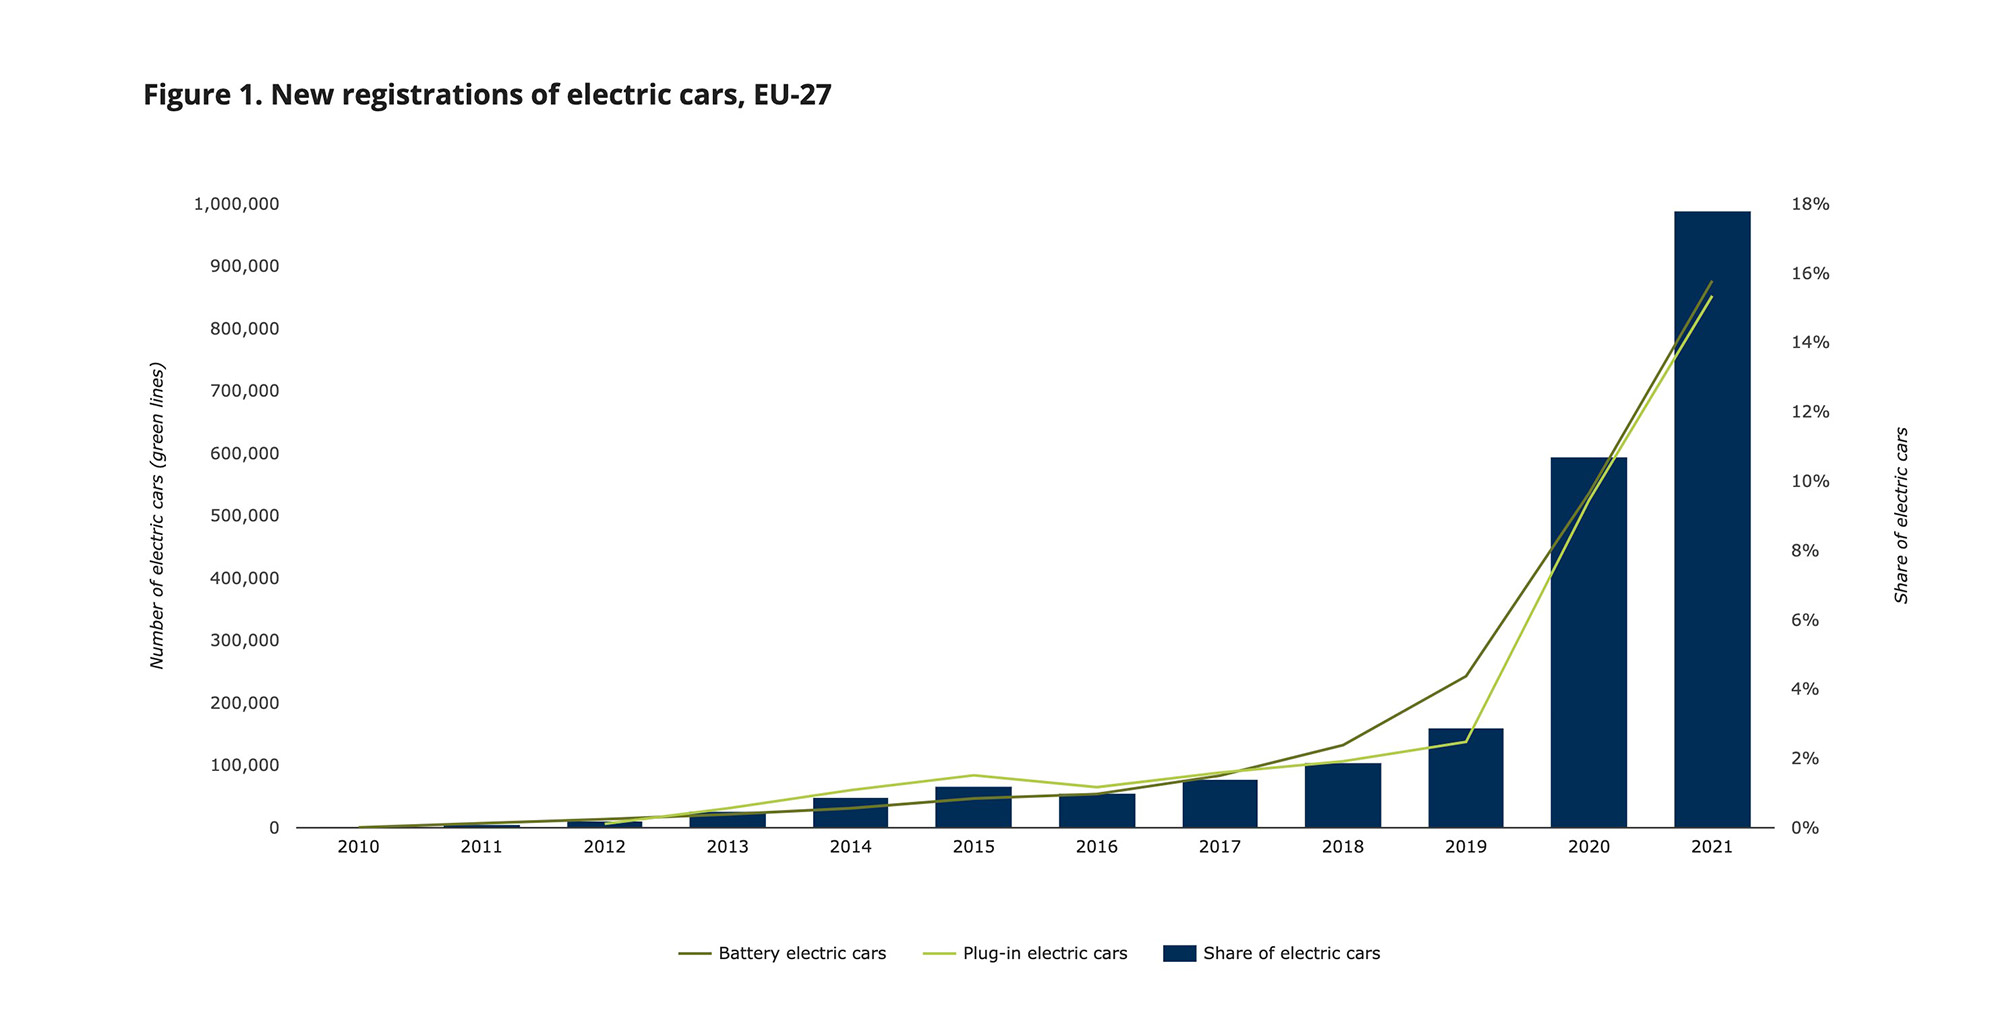 инфографика која показује пораст регистрације електричних возила од 2010. до 2021. године